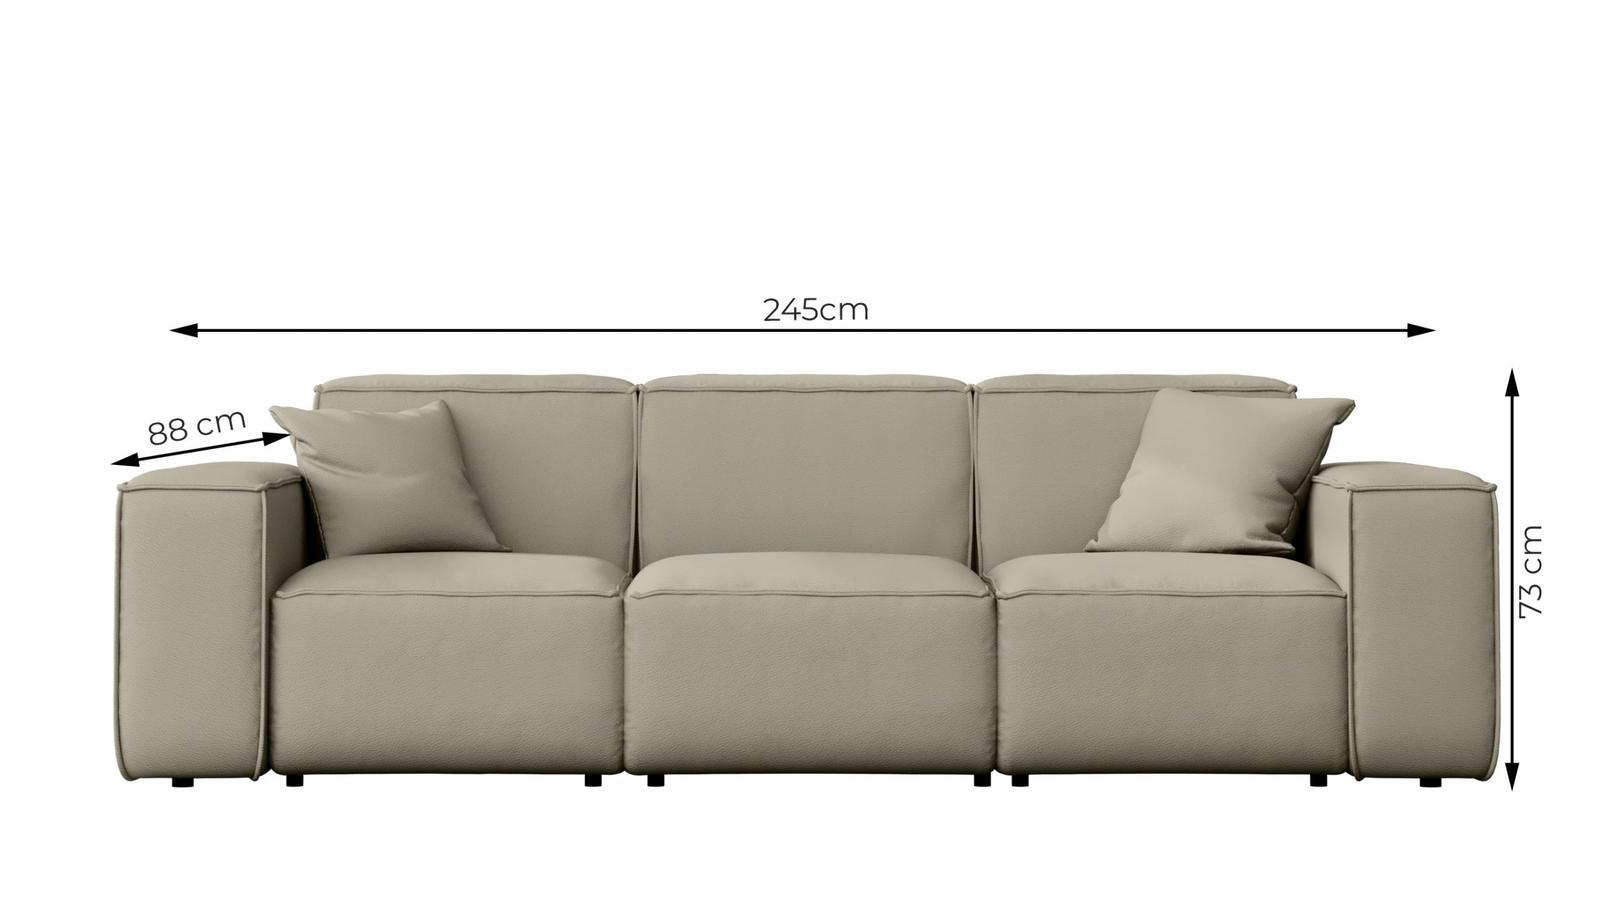 Sofa ogrodowa MALIBU 245x103x88 cm wodoodporna UV 3-os + 2 poduszki do ogrodu jasnoszara 2 Full Screen